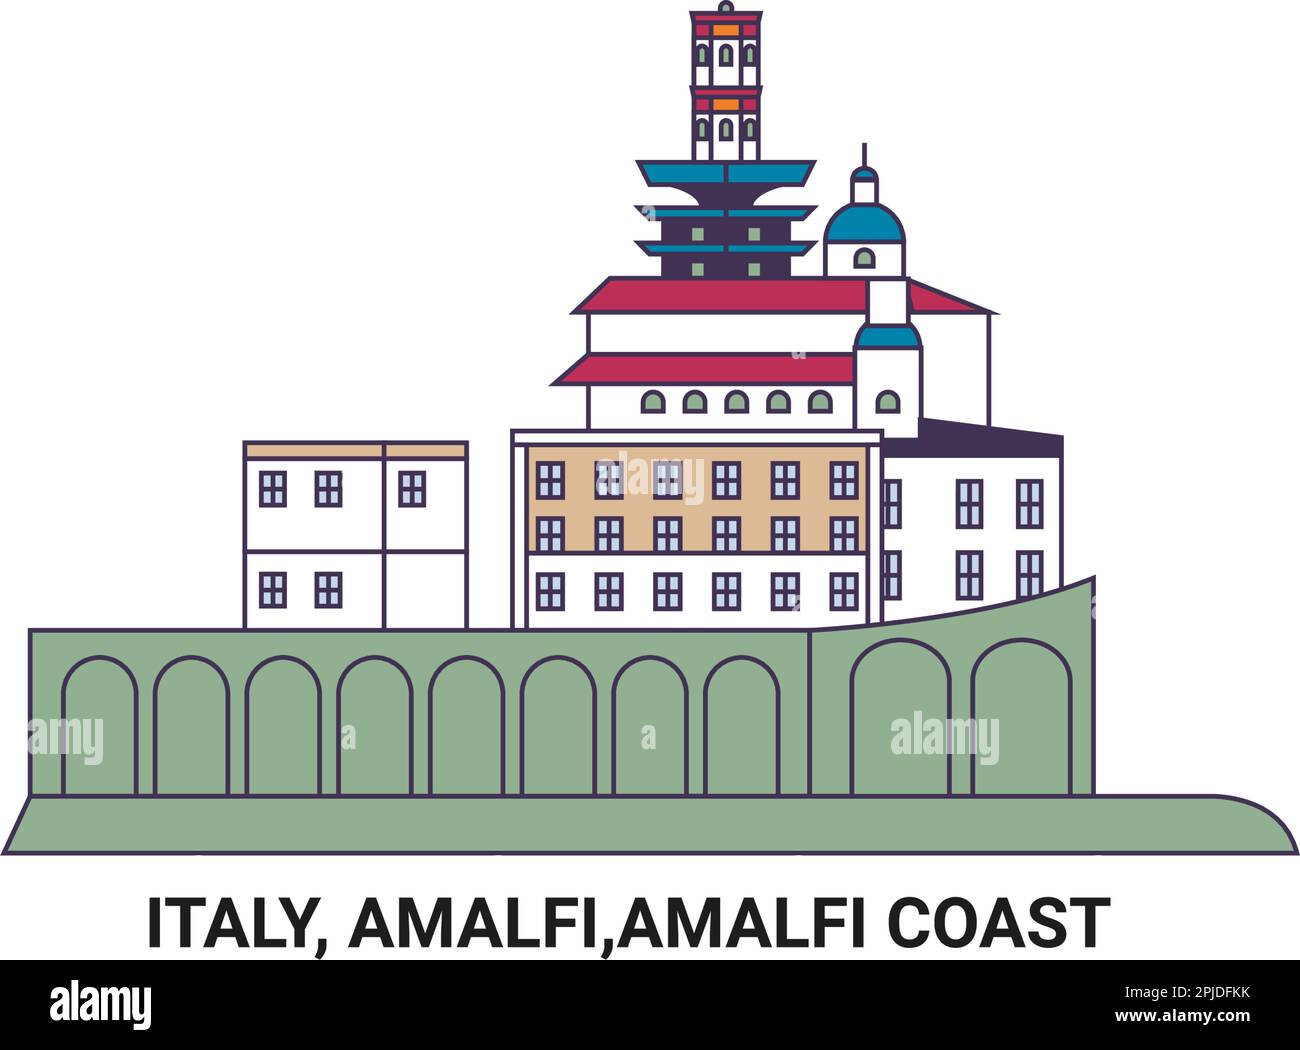 Italien, Amalfi, Amalfiküste, Reise-Wahrzeichen-Vektordarstellung Stock Vektor